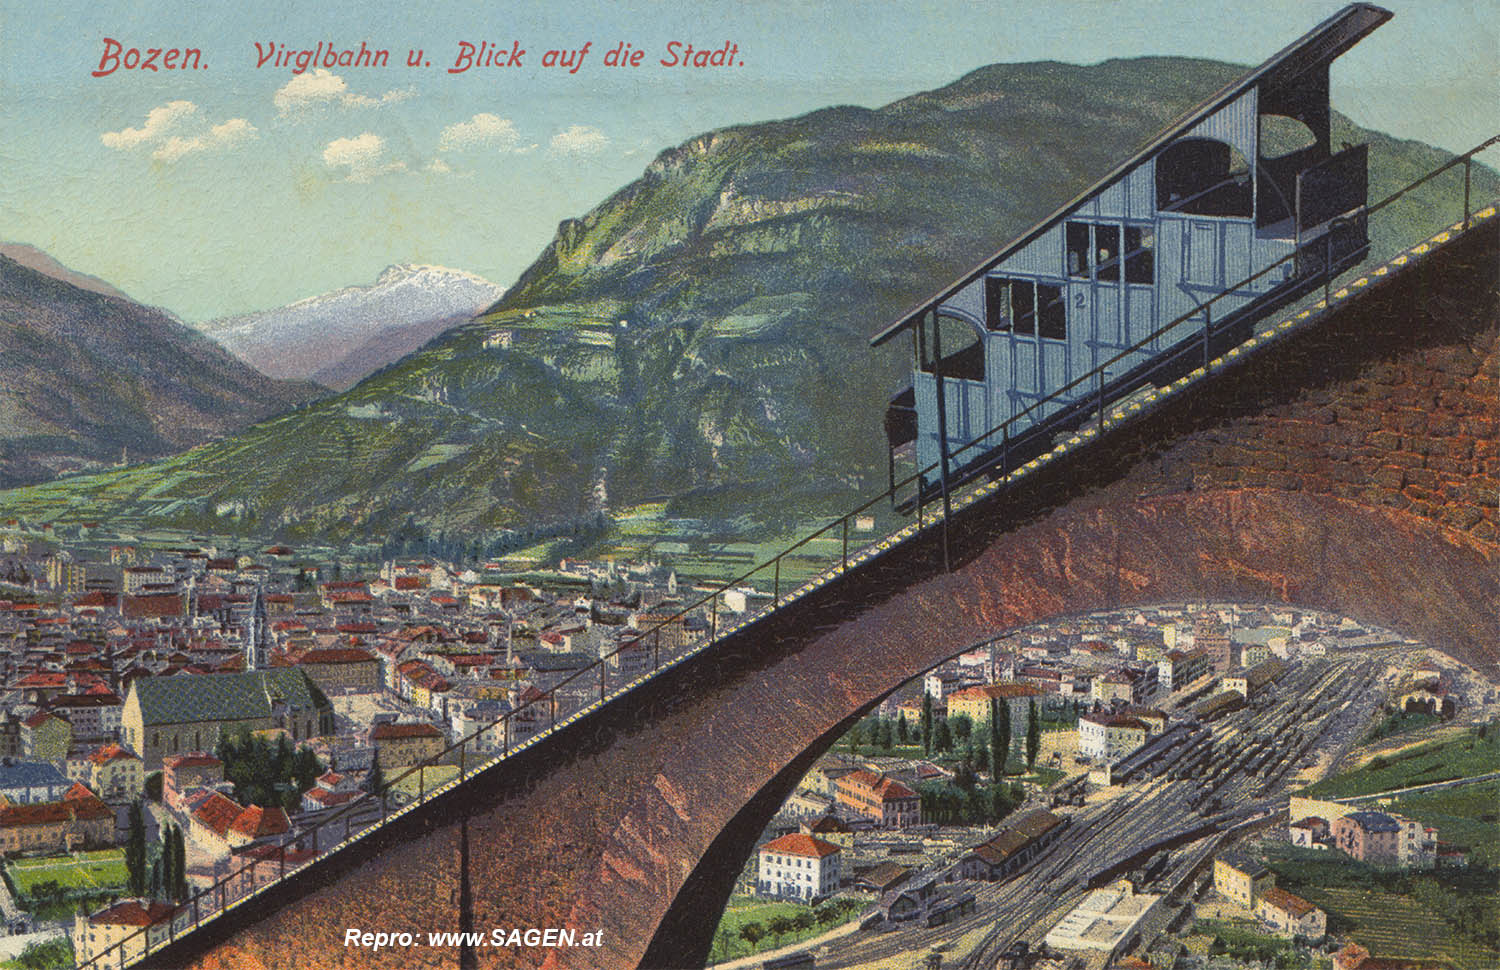 Bozen Virglbahn und Blick auf die Stadt